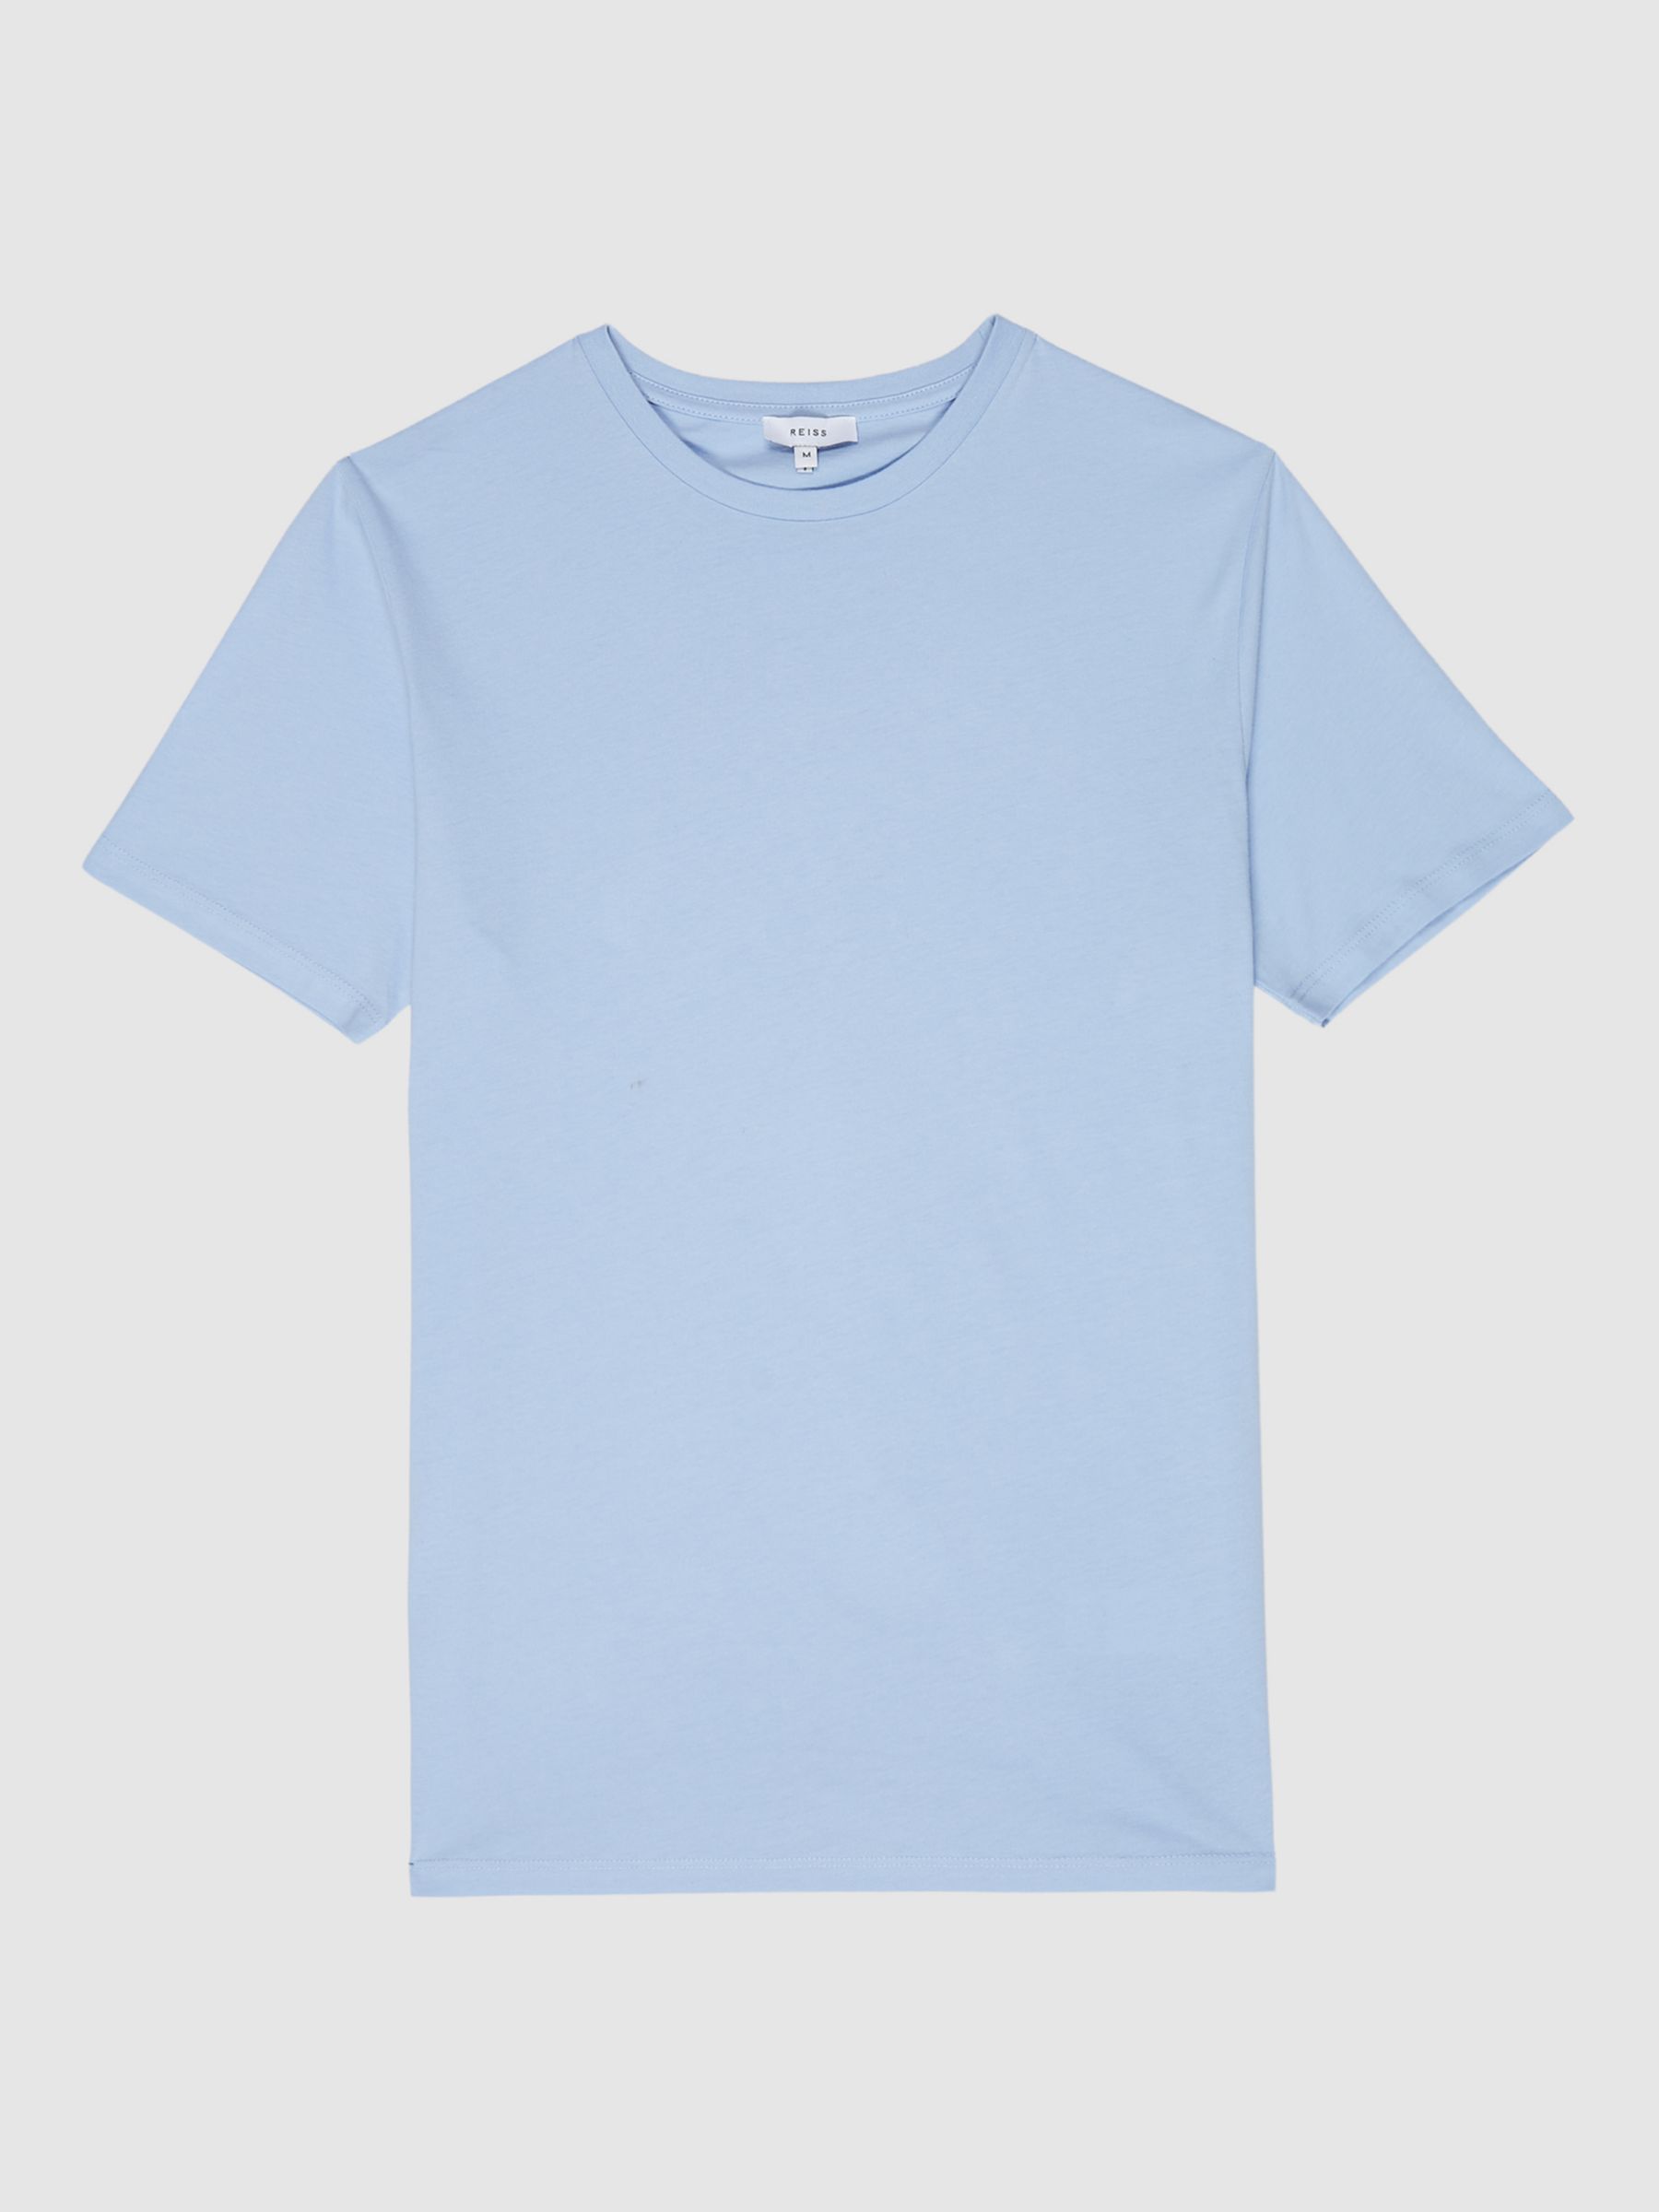 Reiss Bless Cotton Blend Crew Neck T-Shirt, Soft Blue, XS